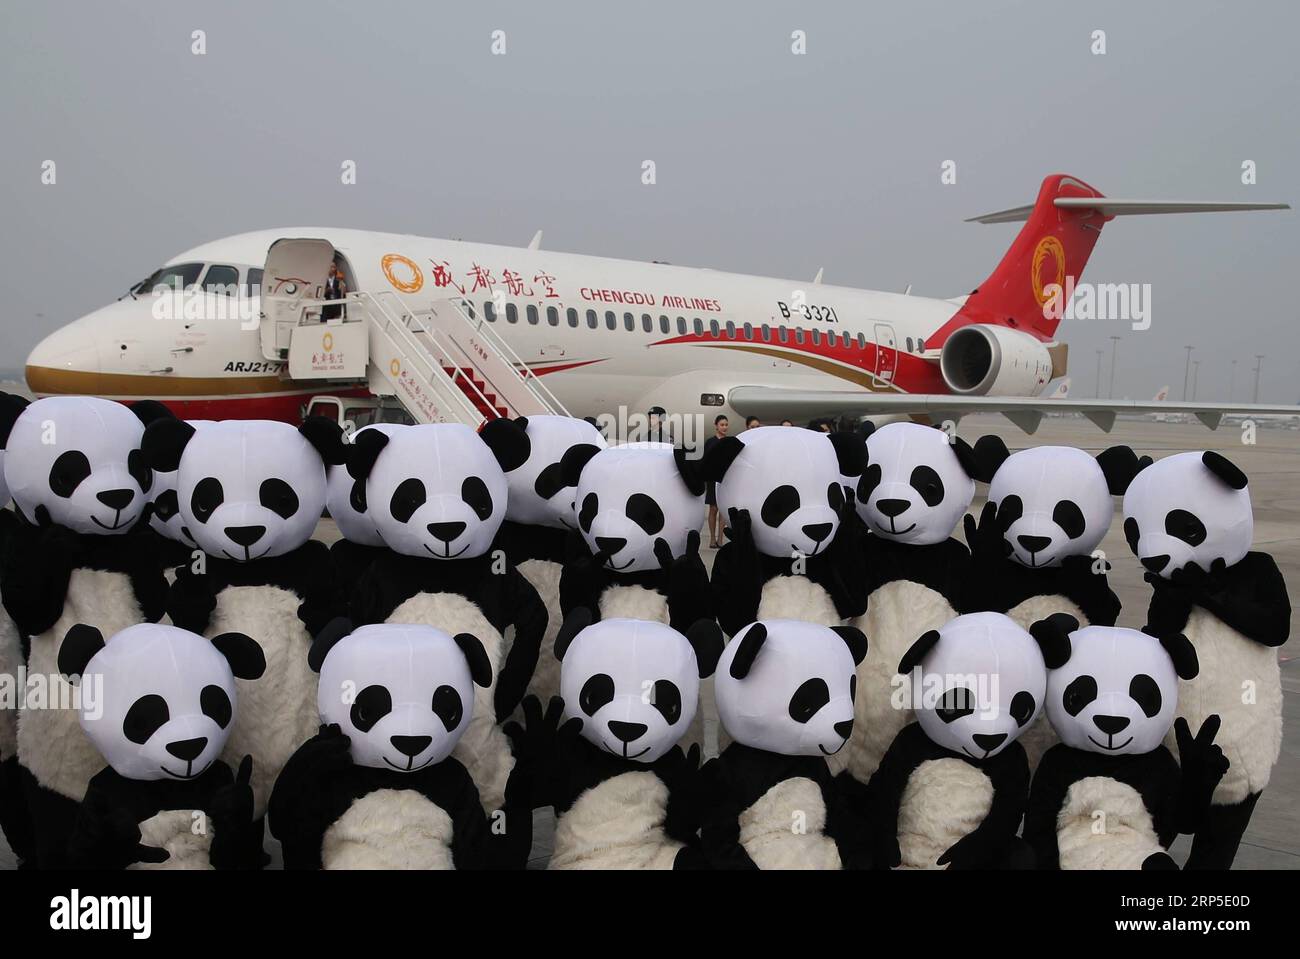 (181211) -- PECHINO, 11 dicembre 2018 -- le mascotte Panda posano per una foto davanti a Chengdu Airlines ARJ21-700 all'aeroporto internazionale Chengdu Shuangliu di Chengdu, capitale della provincia del Sichuan della Cina sud-occidentale, il 28 giugno 2016. Lunedì scorso, l'Amministrazione dell'aviazione civile cinese ha pubblicato un piano d'azione volto a rendere l'industria dell'aviazione civile cinese una delle migliori al mondo entro il 2050. Secondo il piano, dal 2021 al 2035, la Cina rafforzerà in modo globale la forza della sua industria dell'aviazione civile non solo per assumere il comando nel trasporto aereo, ma anche per avere l'aereo più competitivo del mondo Foto Stock